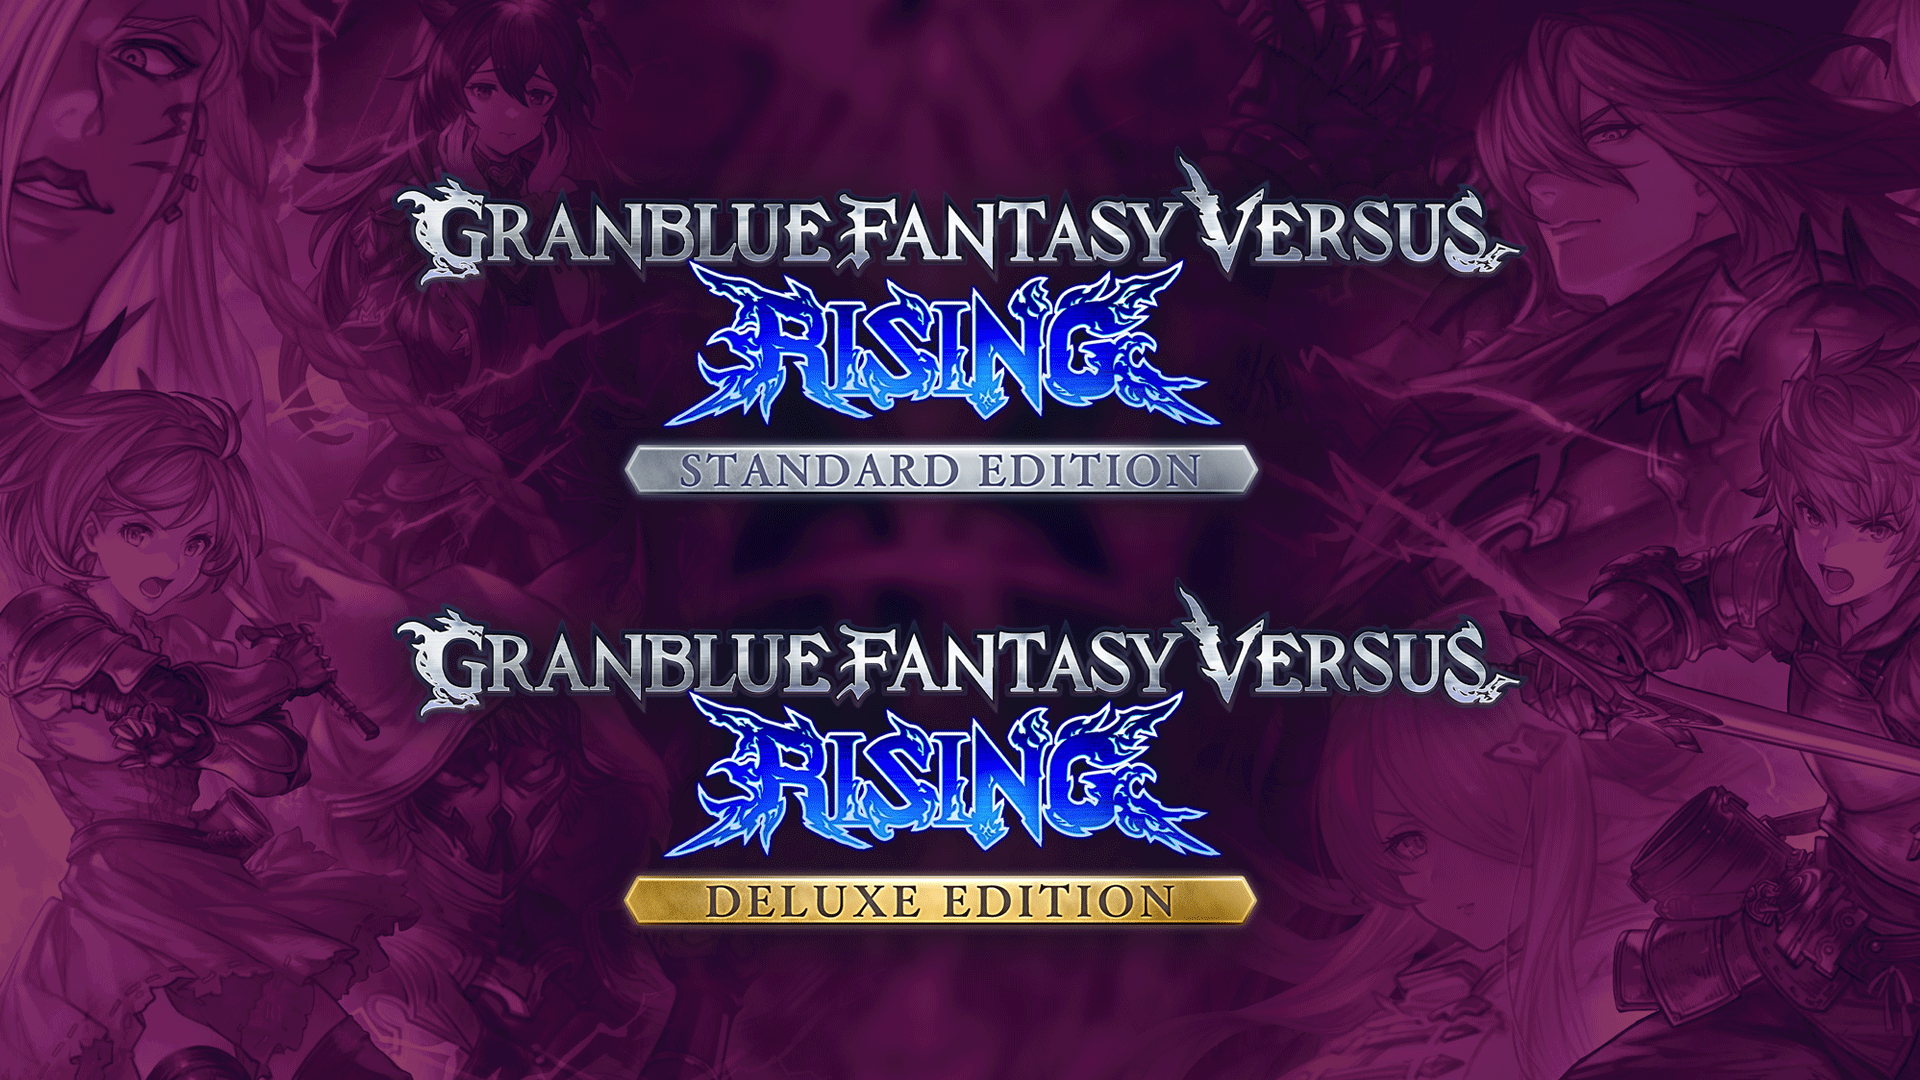 Granblue Fantasy Versus: Rising on Steam